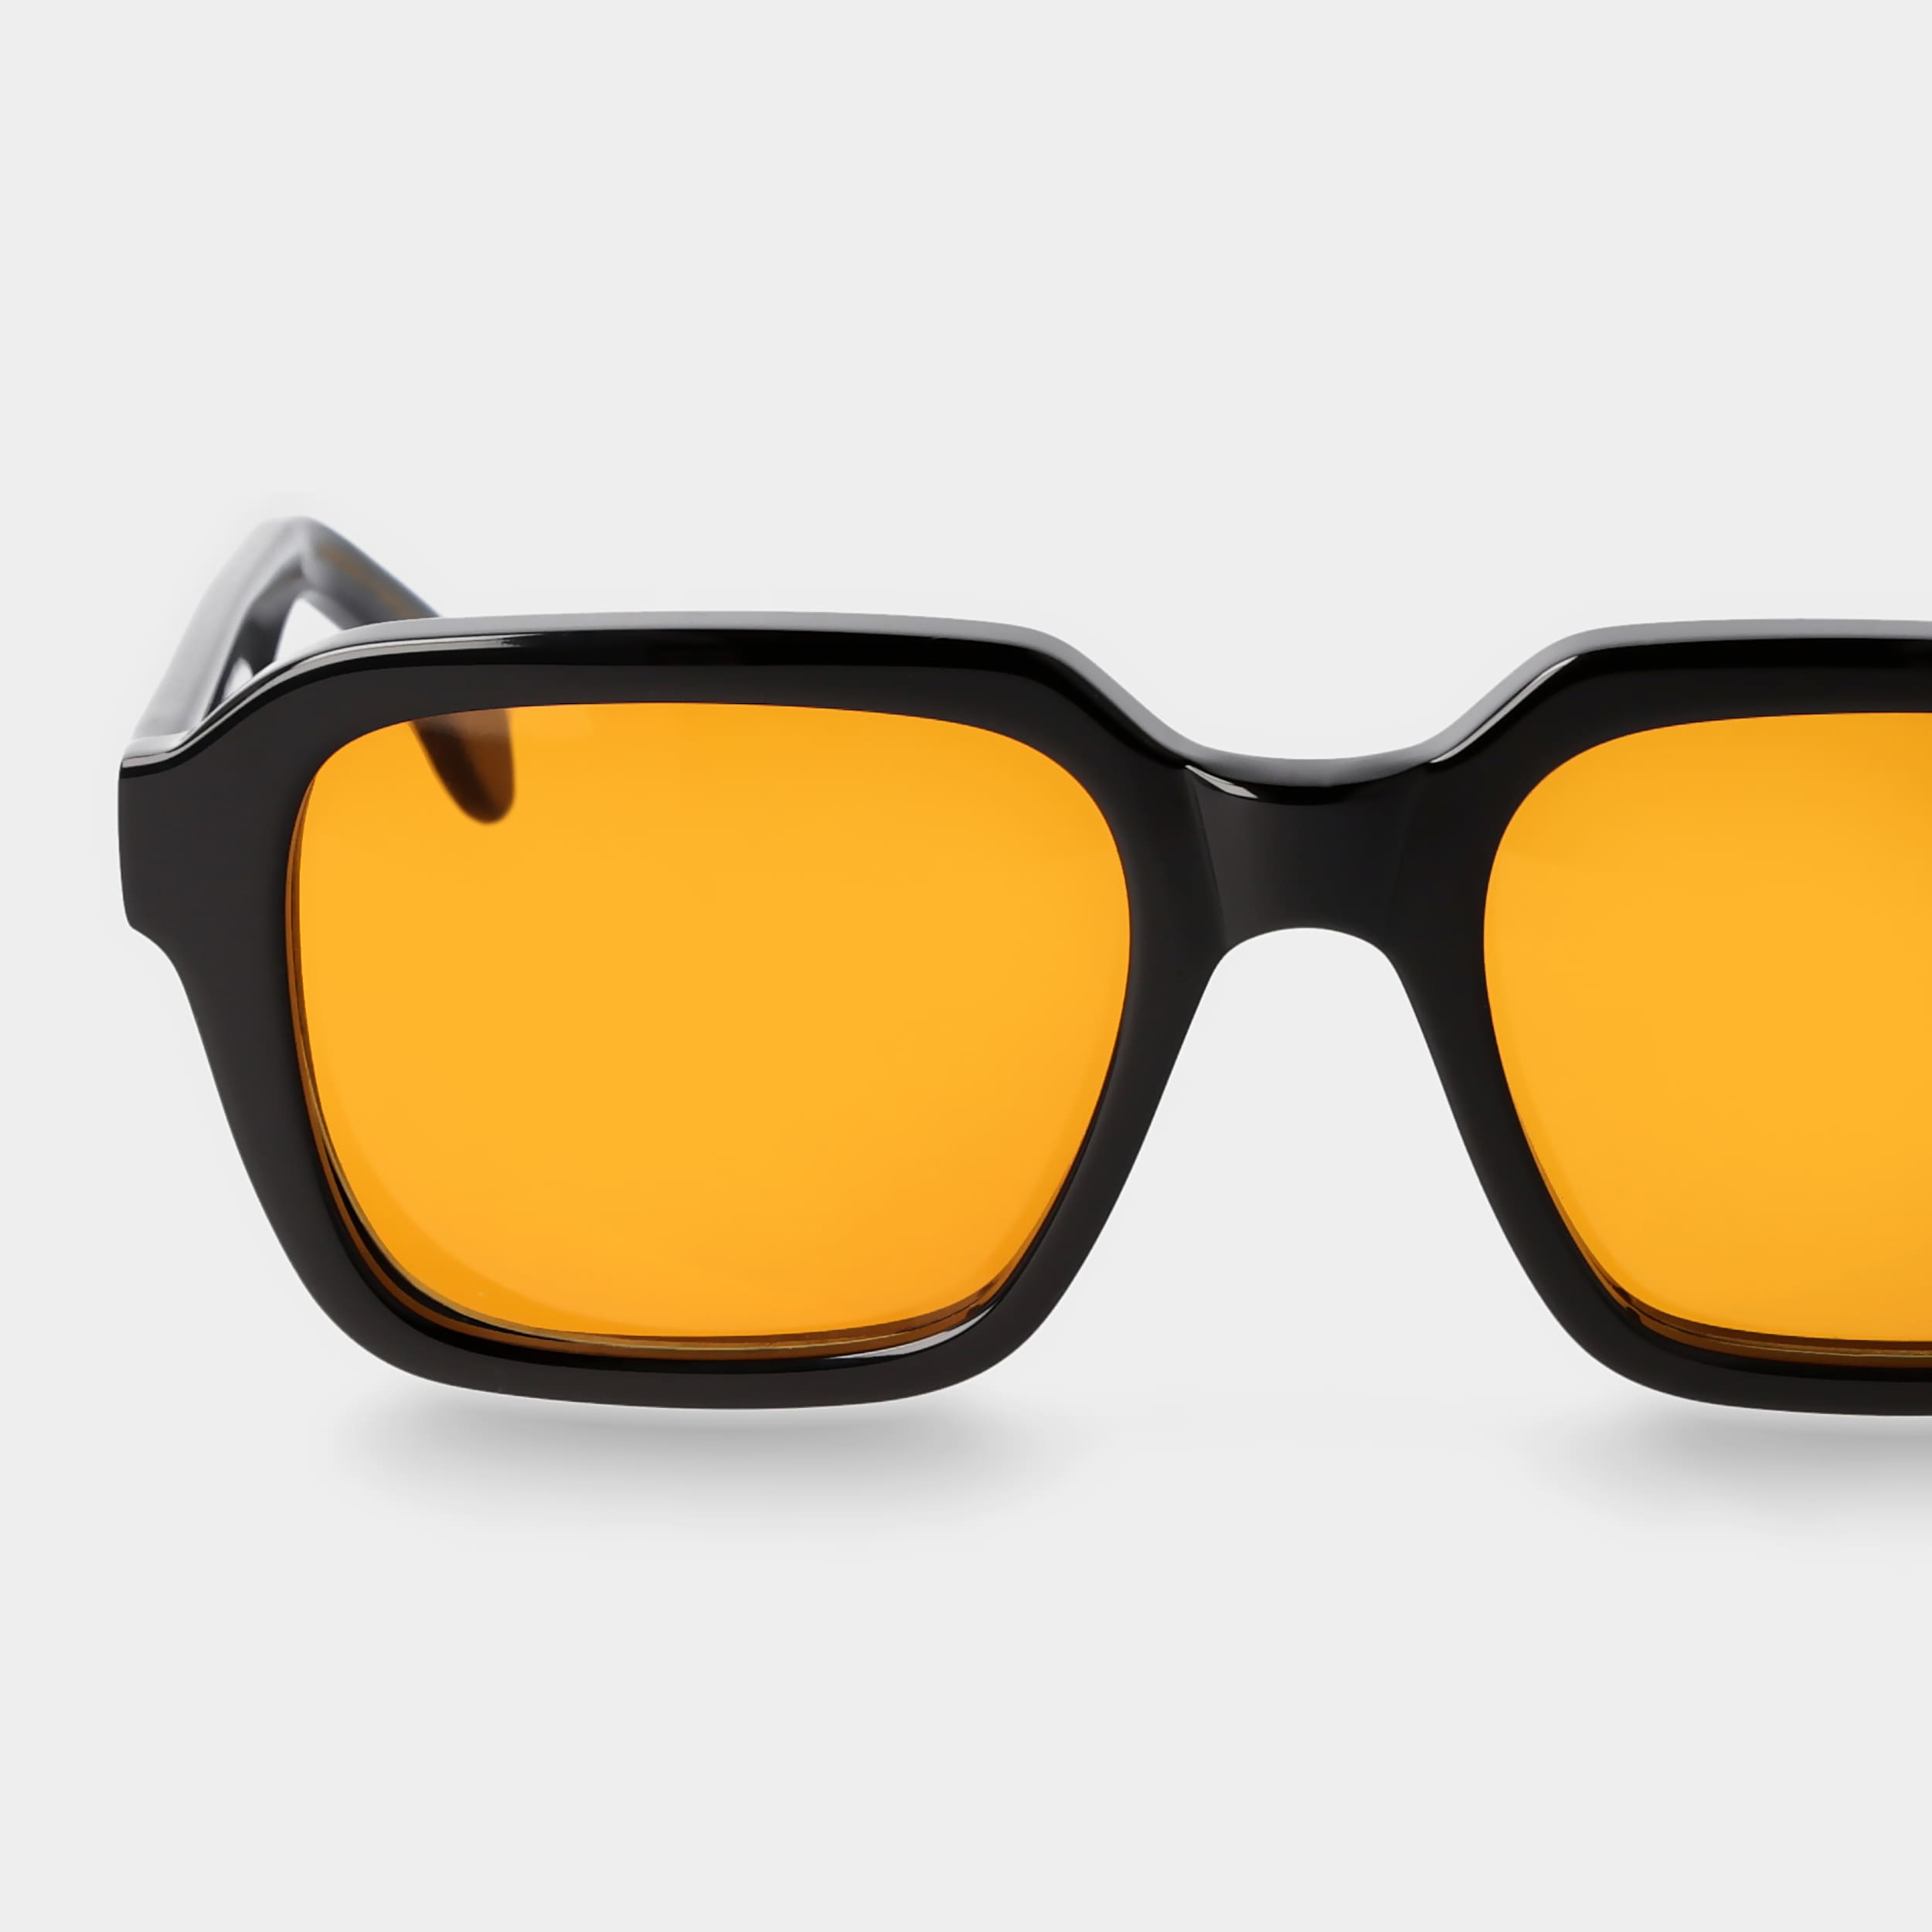 Schwarze Sonnenbrille mit klappbaren Gläsern